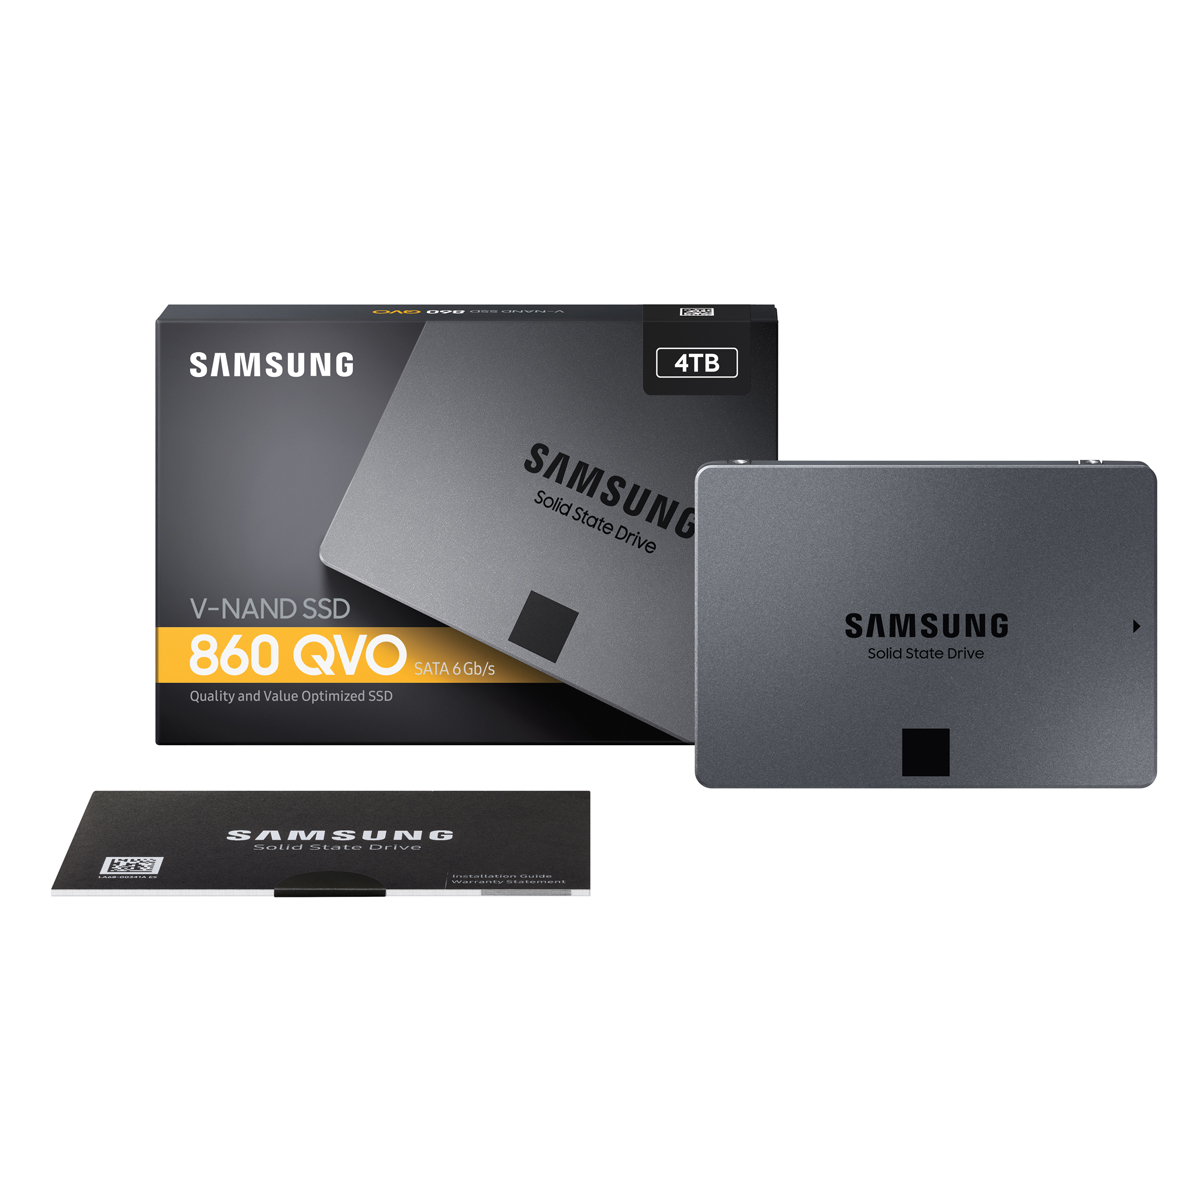 最大4Wアイドル時消費電力1TB V-NAND SSD 860 QVO Samsung 最新ファーム